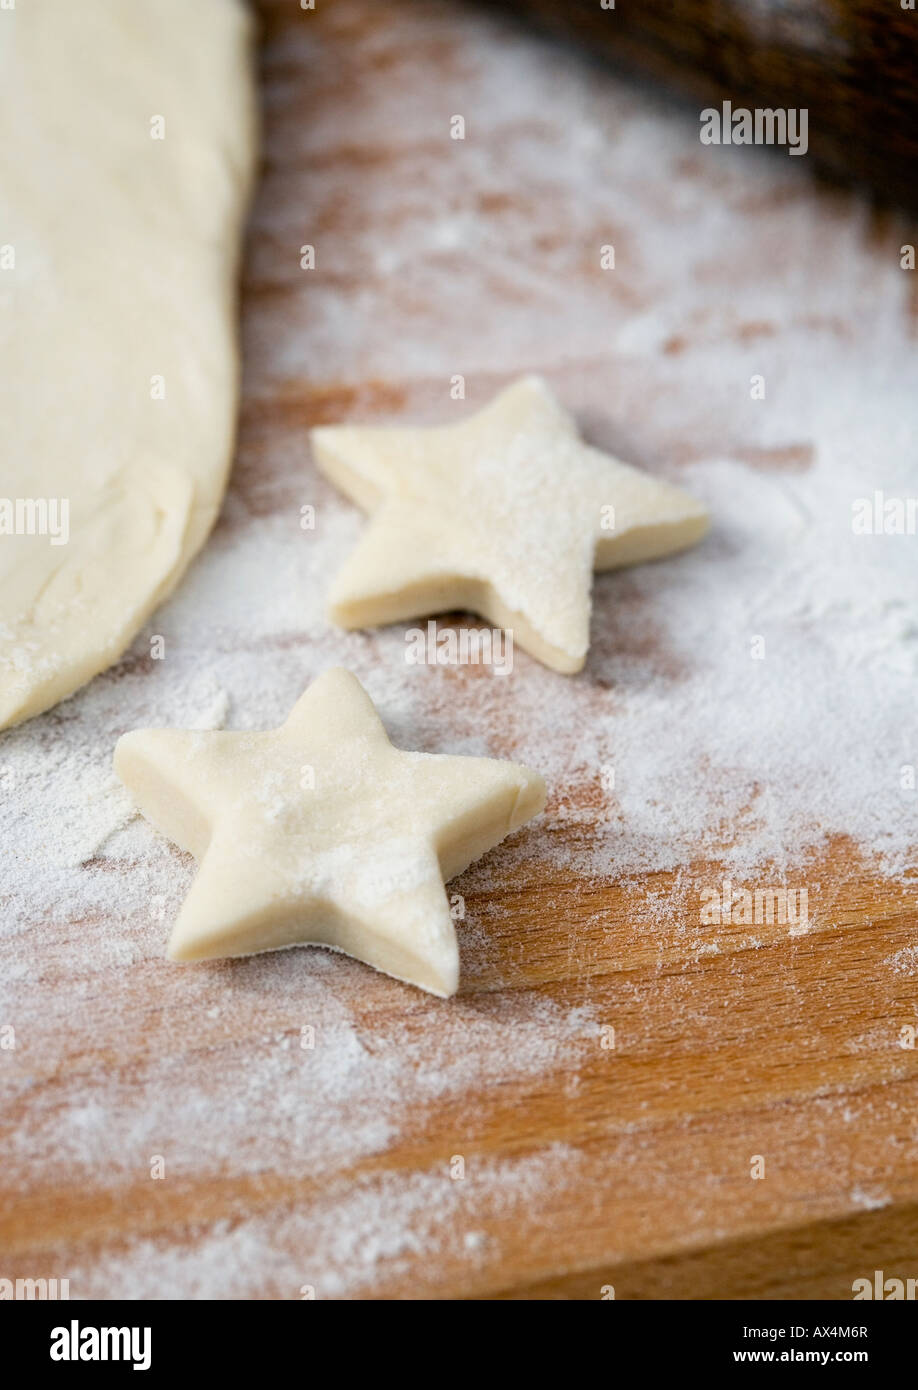 La pâte roulée en forme d'étoile avec les cookies avant cuisson Banque D'Images